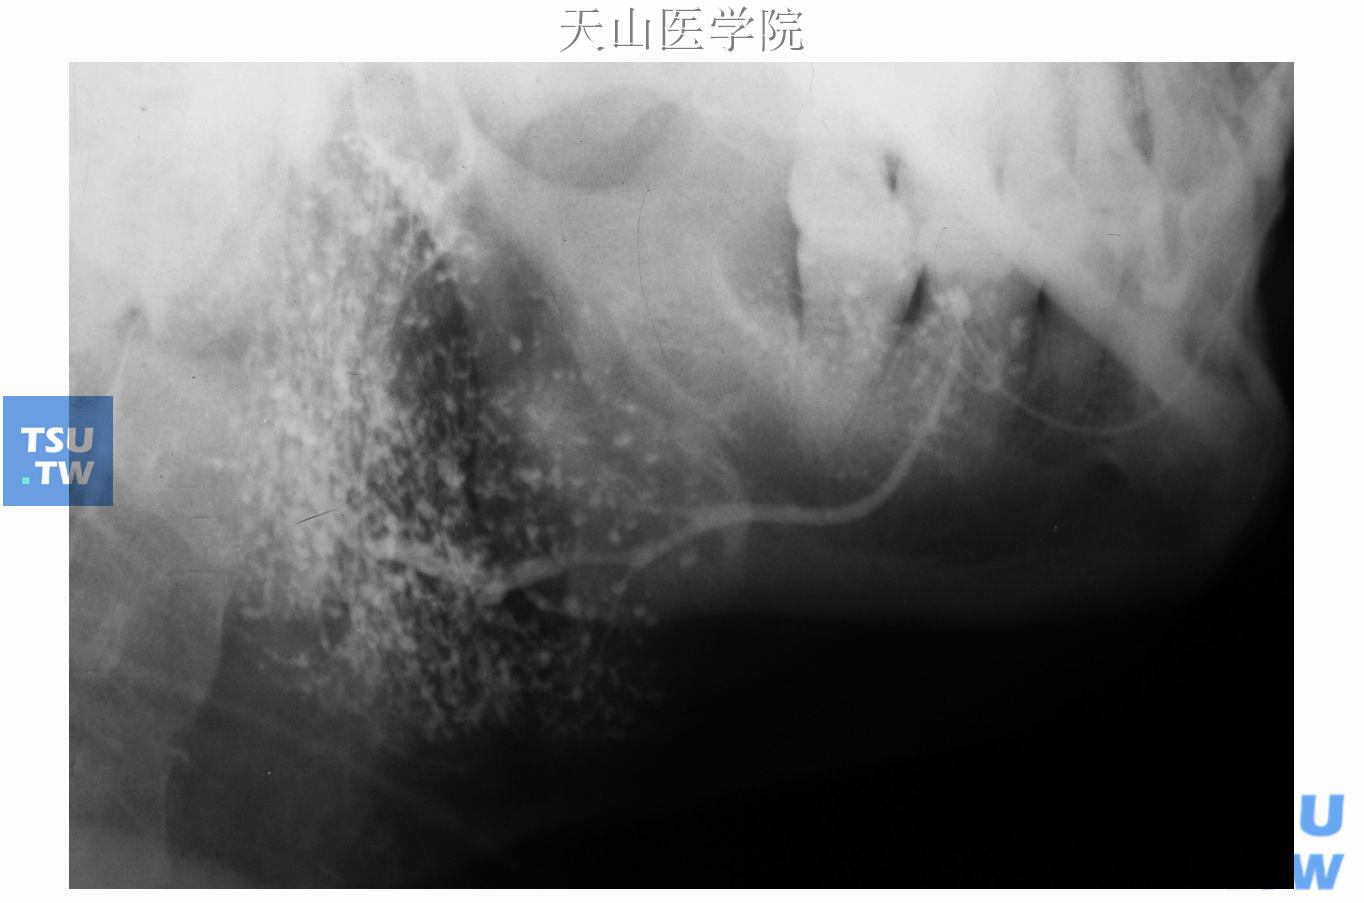 干燥综合征，左腮腺造影显示大量末梢导管扩张呈点状、球状，腺内段主导管稍扩张